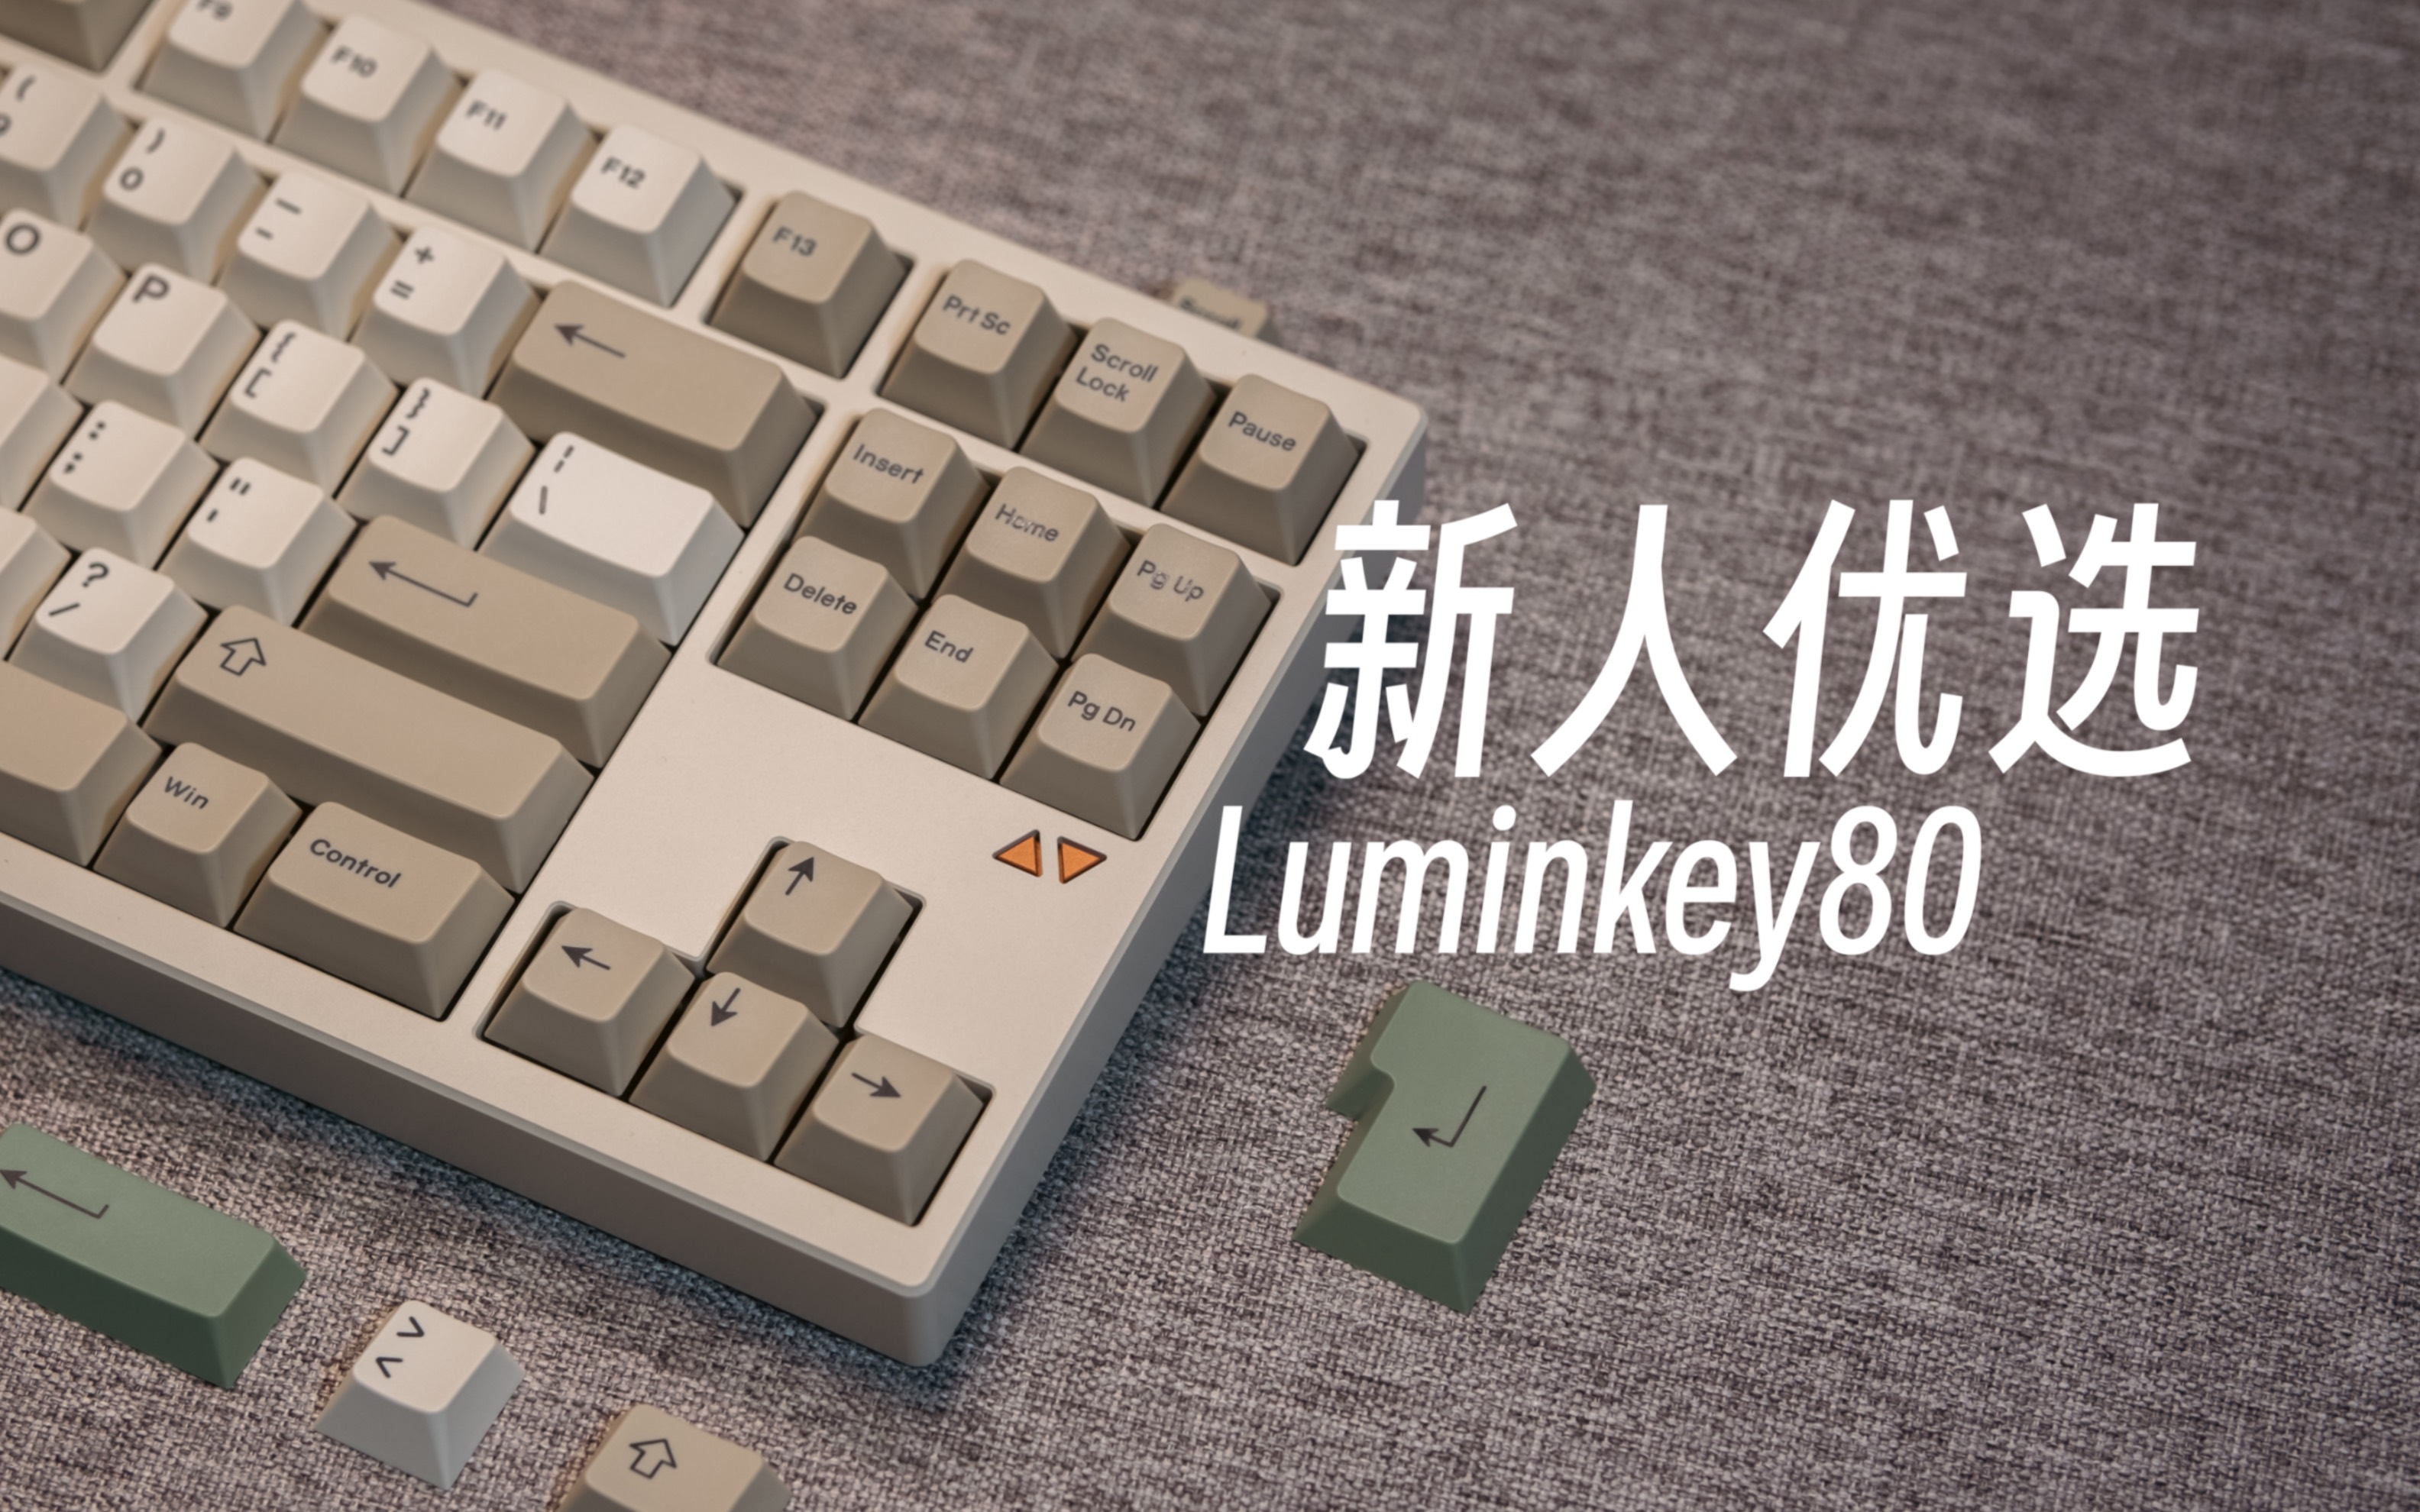 【装备】又一把入坑绕不开的键盘—Luminkey 80 By Createkeebs热插拔成品机械键盘游客制化机械键盘键盘套件阳极打字音助眠asmr【辣椒】